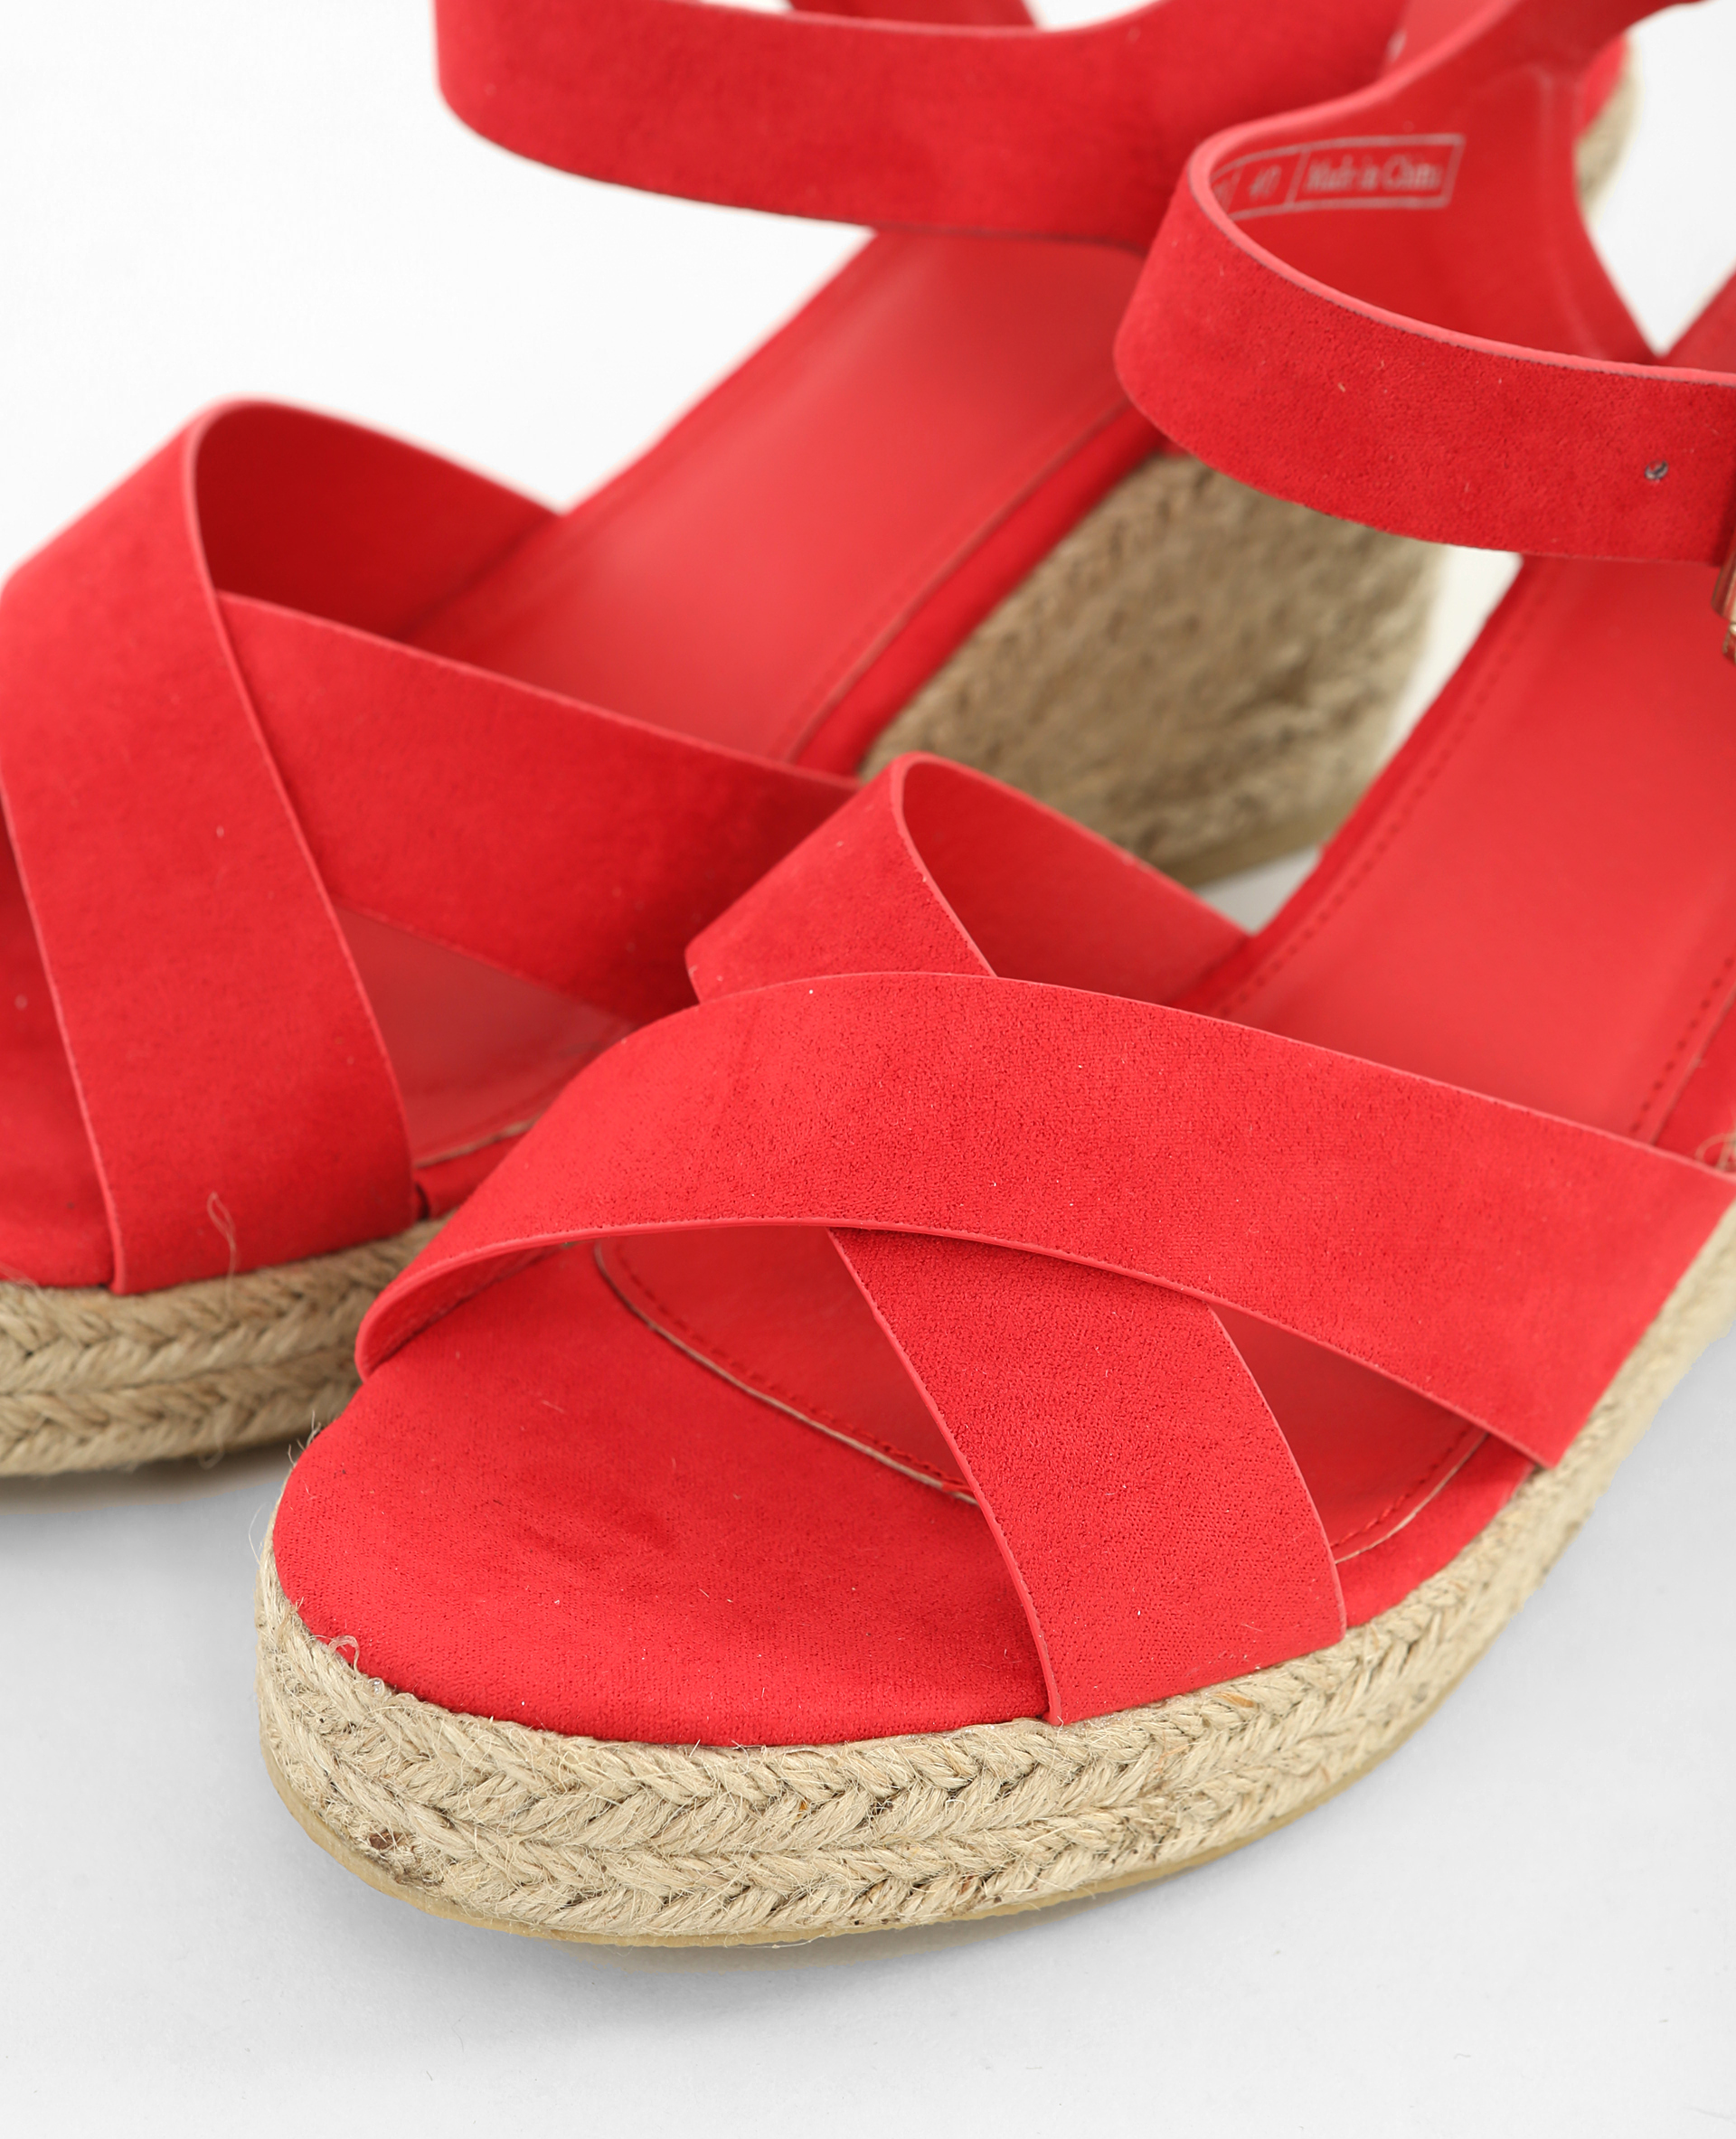 Chaussures Sandales à talons hauts Compensées di Marzio Compens\u00e9 rouge style d\u00e9contract\u00e9 